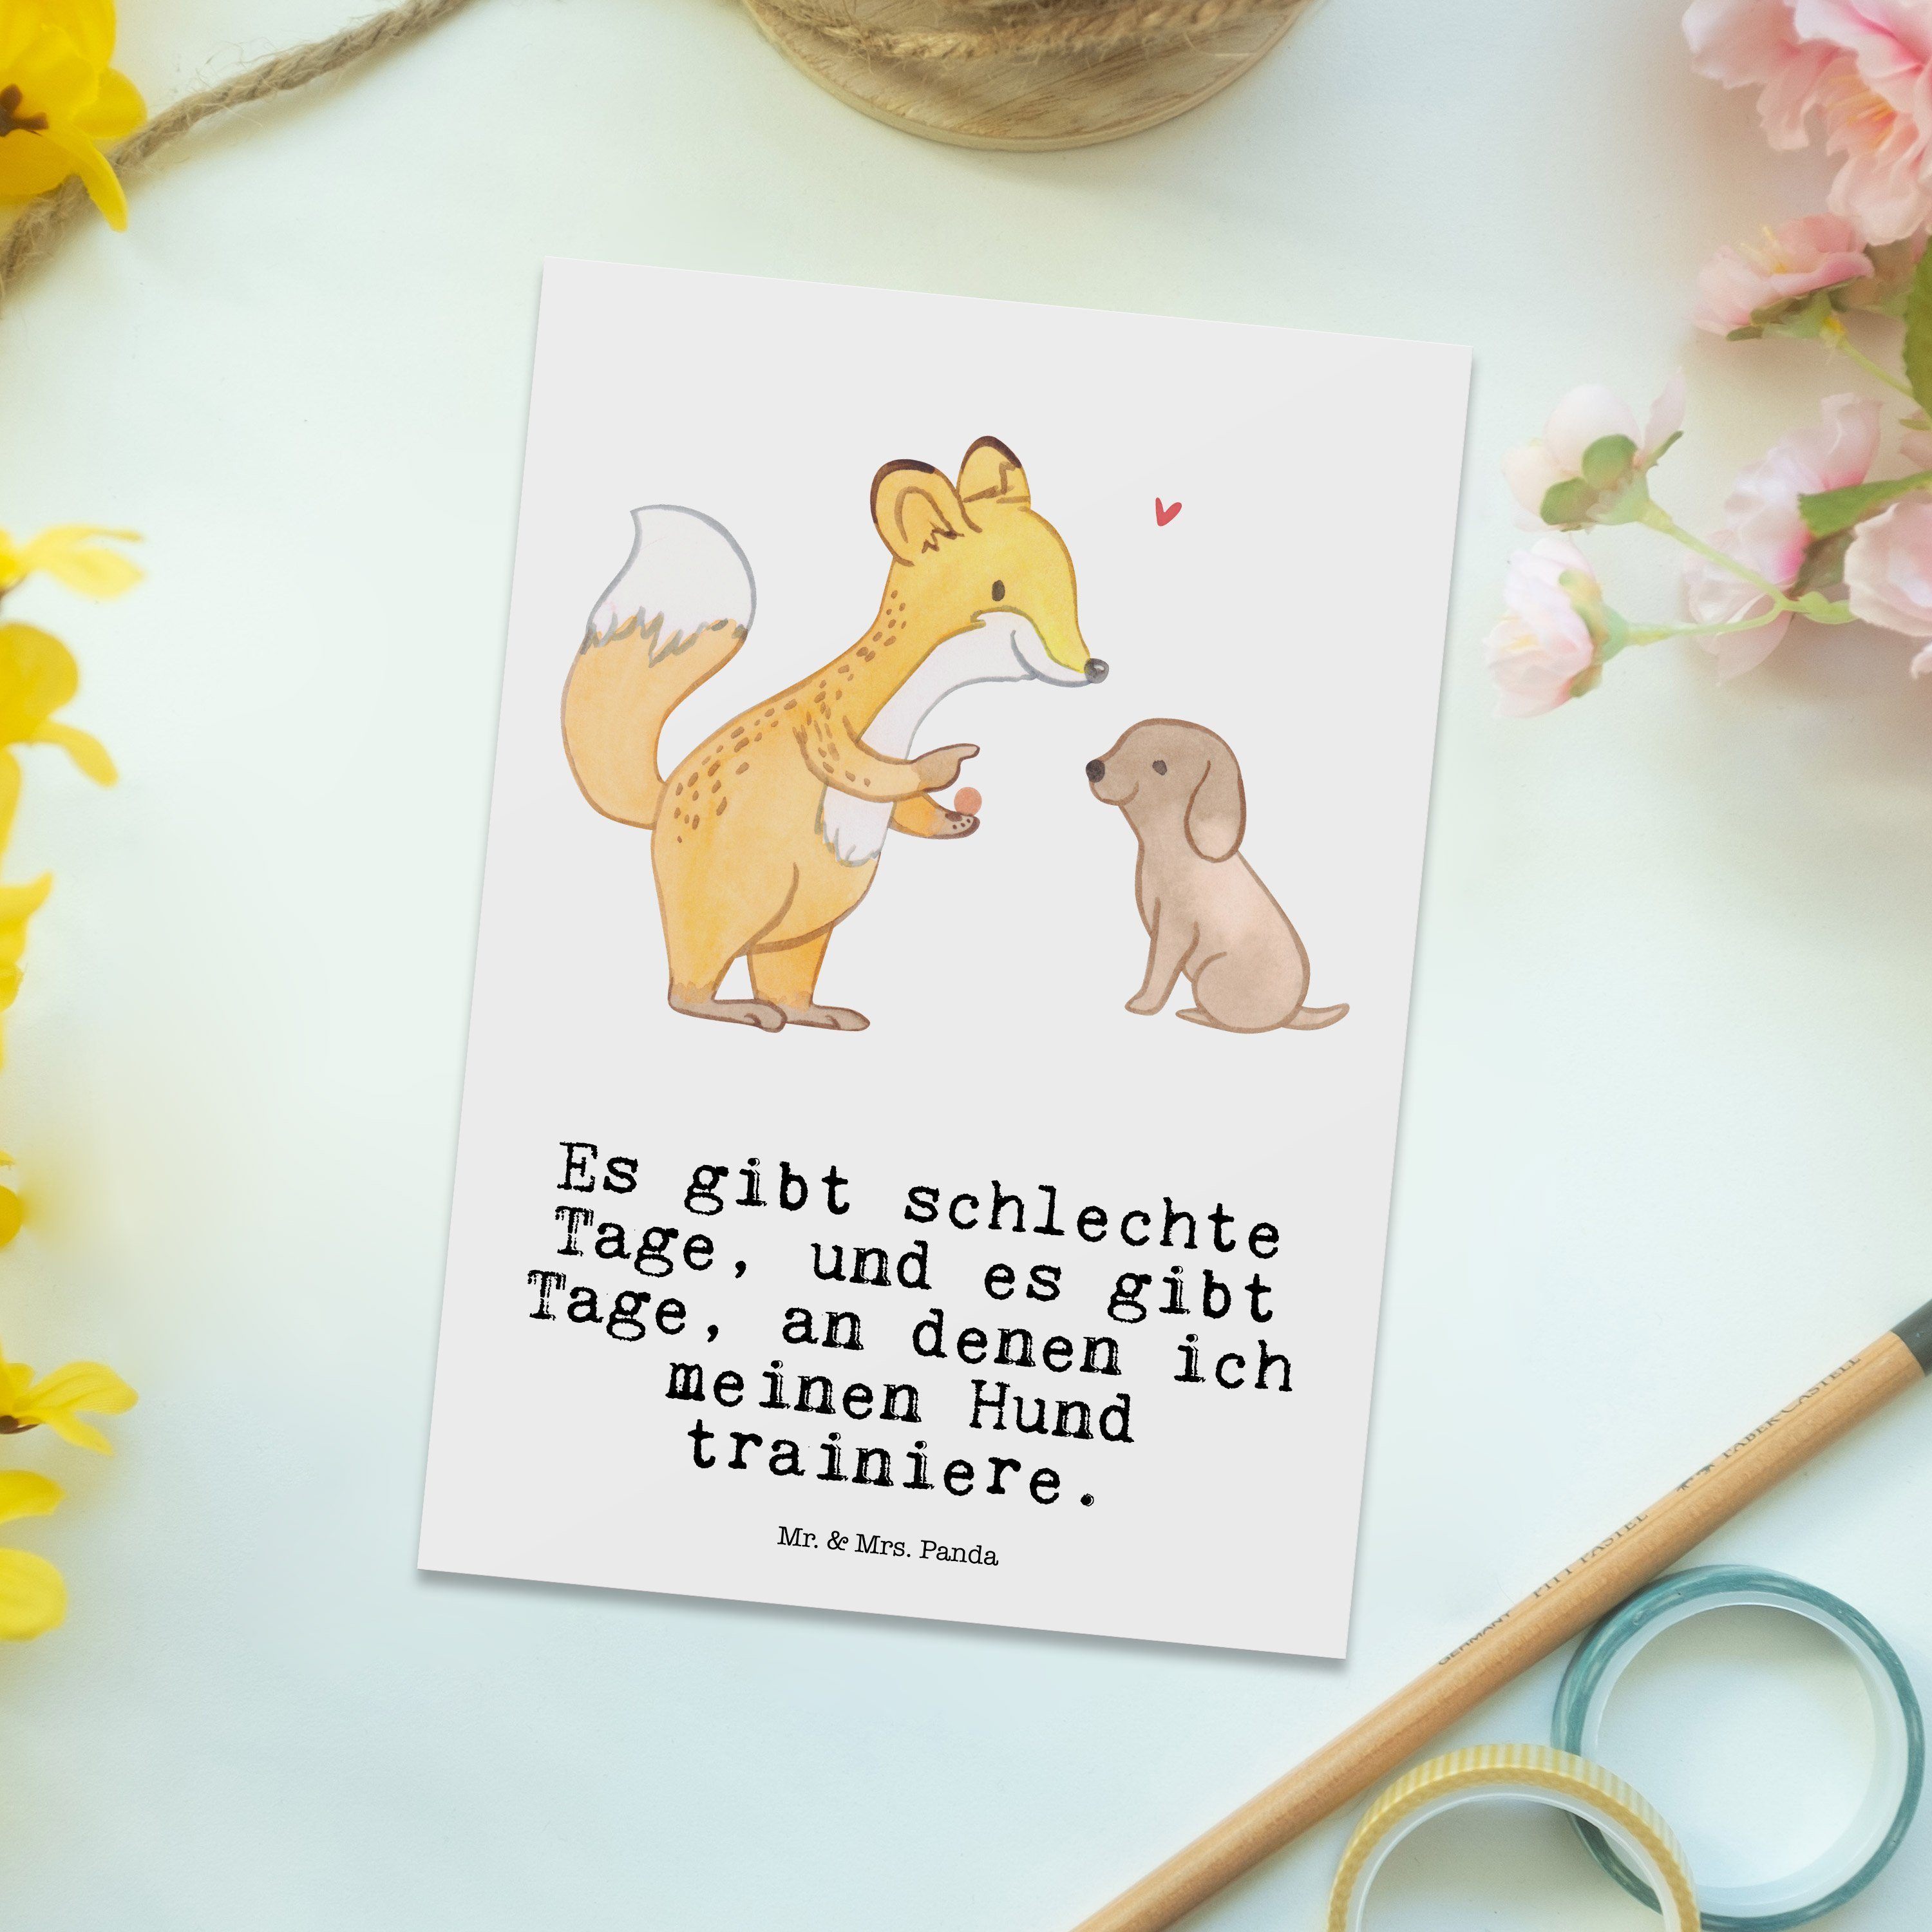 Mr. & Mrs. Geschenk, Ansichtskart Weiß - Hundeschule, Tage Postkarte Fuchs - Panda Hundetraining